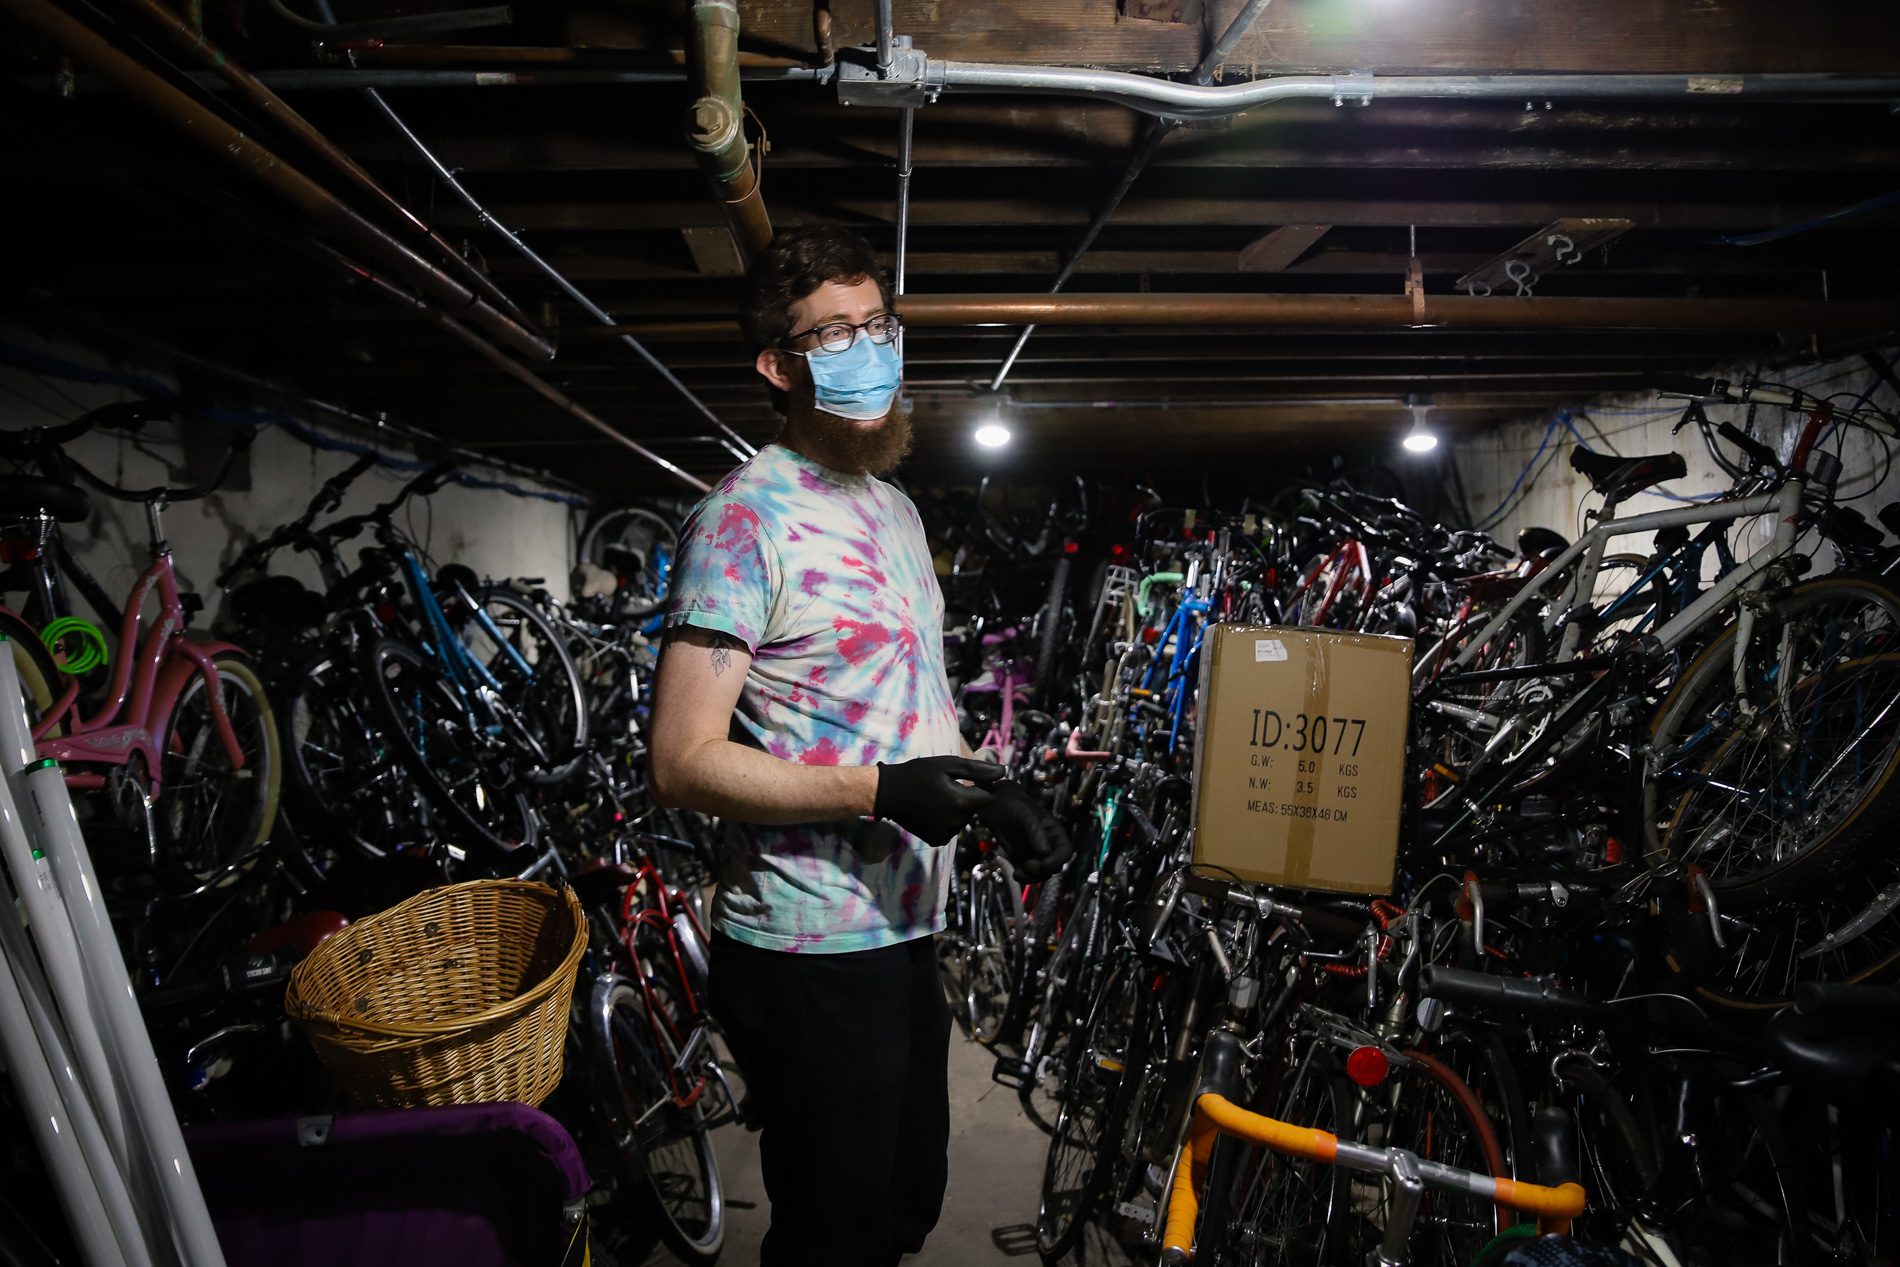 Dana Smith rodeada de bicicletas apiladas hasta el techo de un sótano